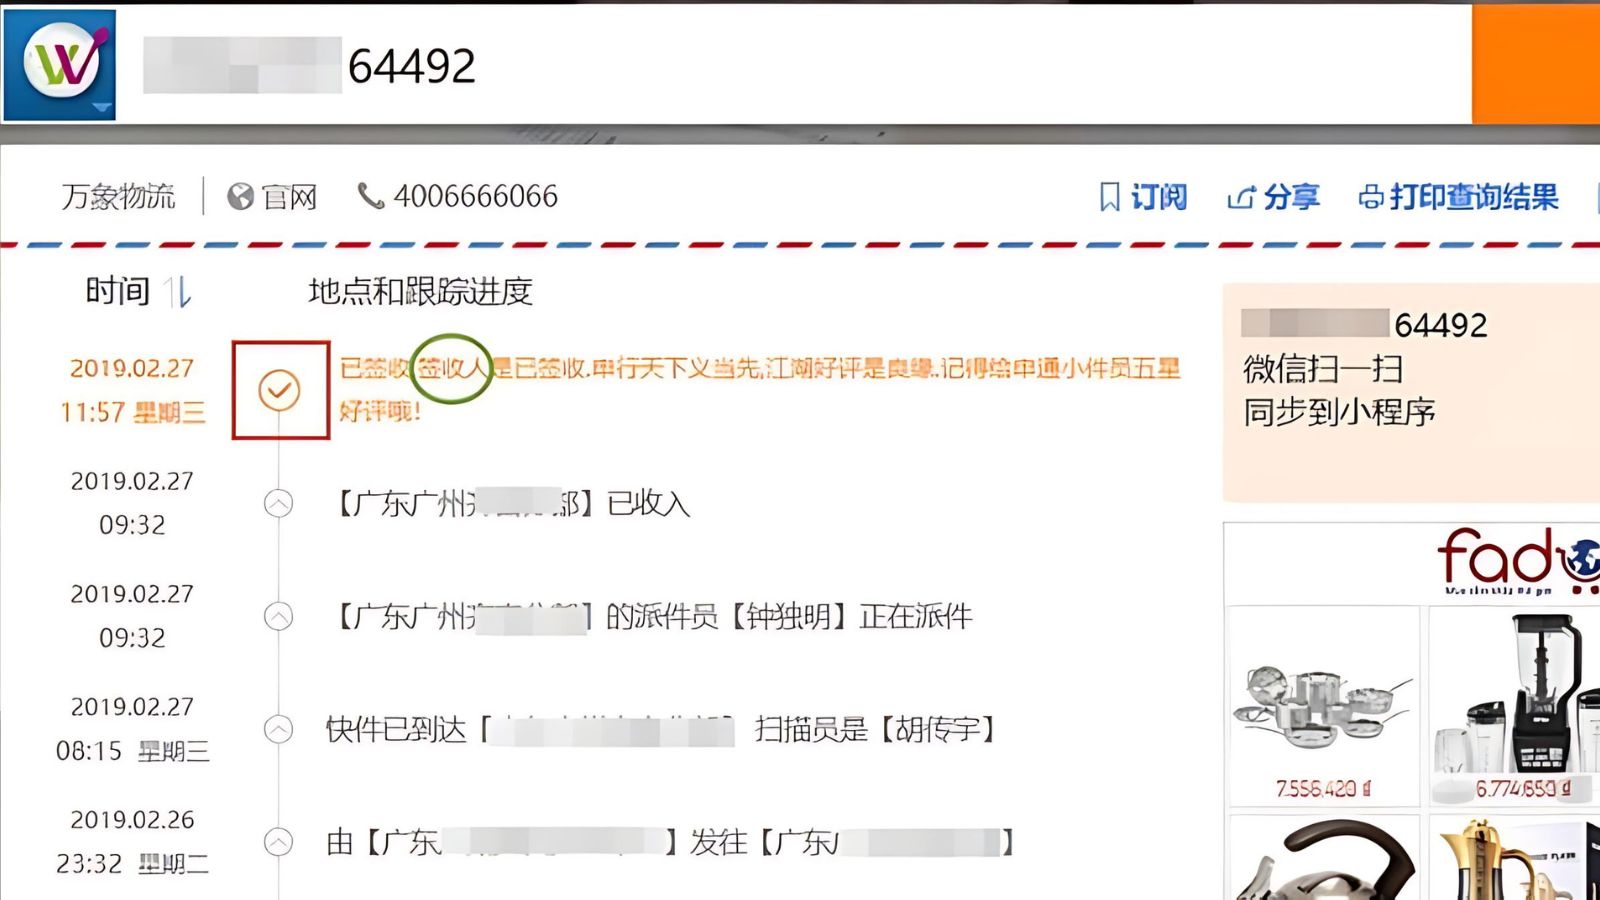 Dán mã vận đơn vào ô tìm kiếm để kiểm tra mã vận đơn bên Trung Quốc